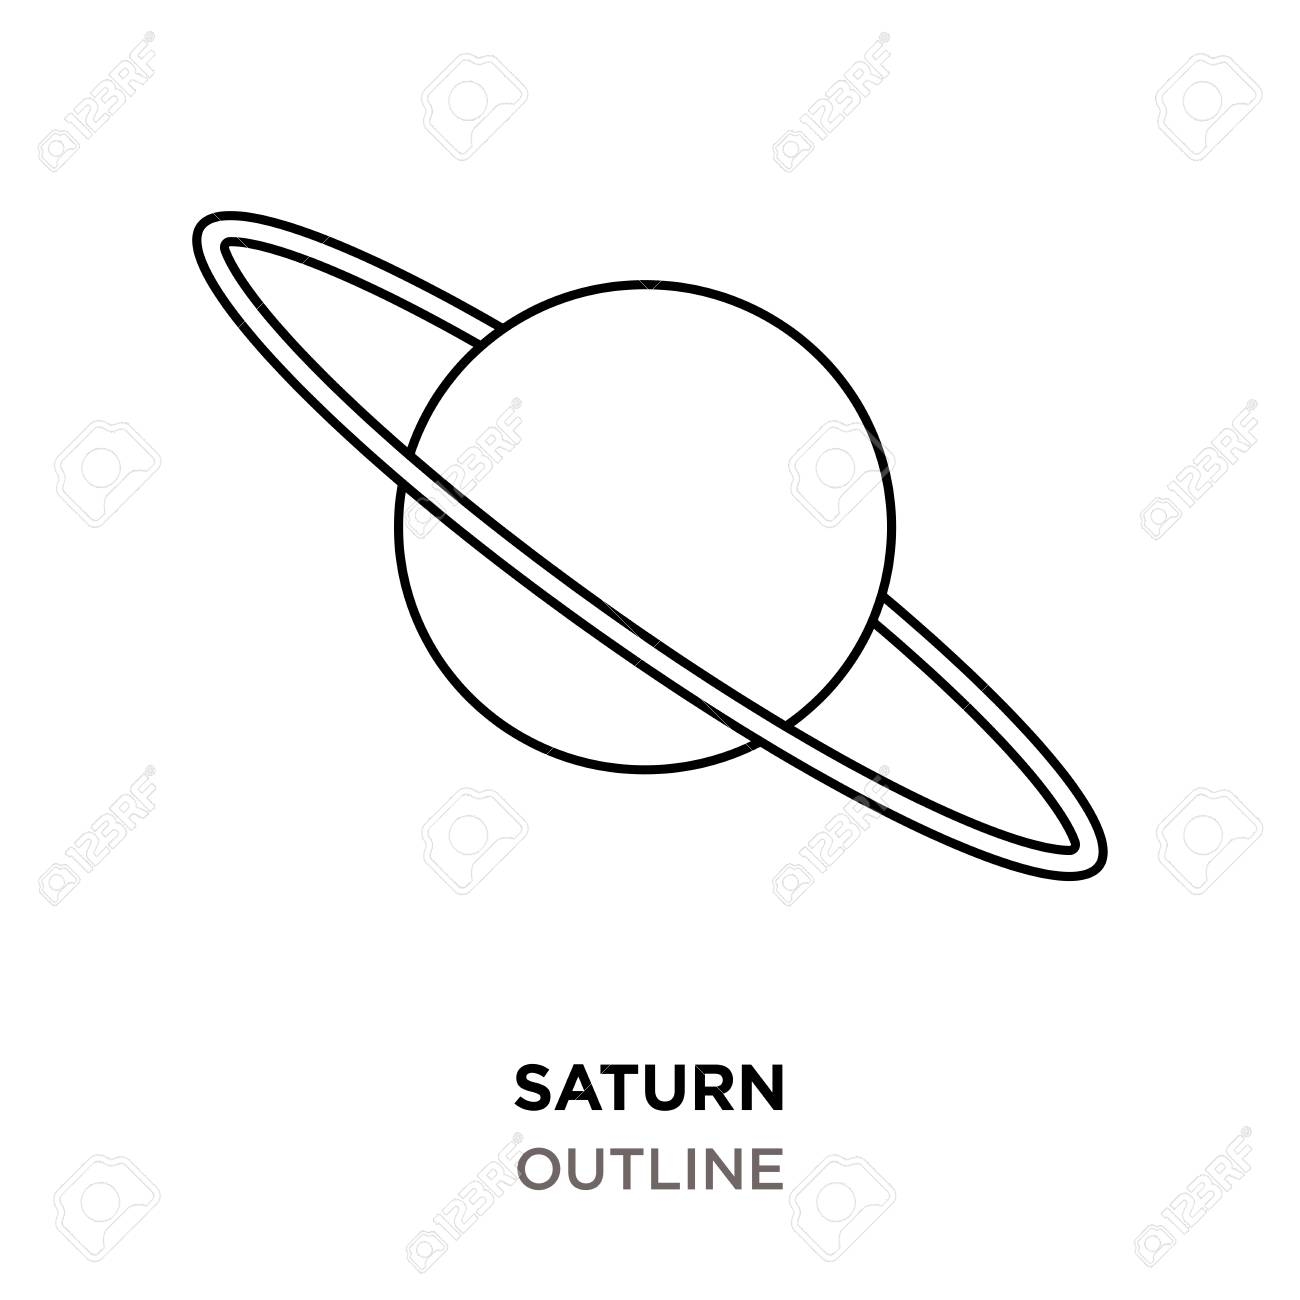 Saturn outline